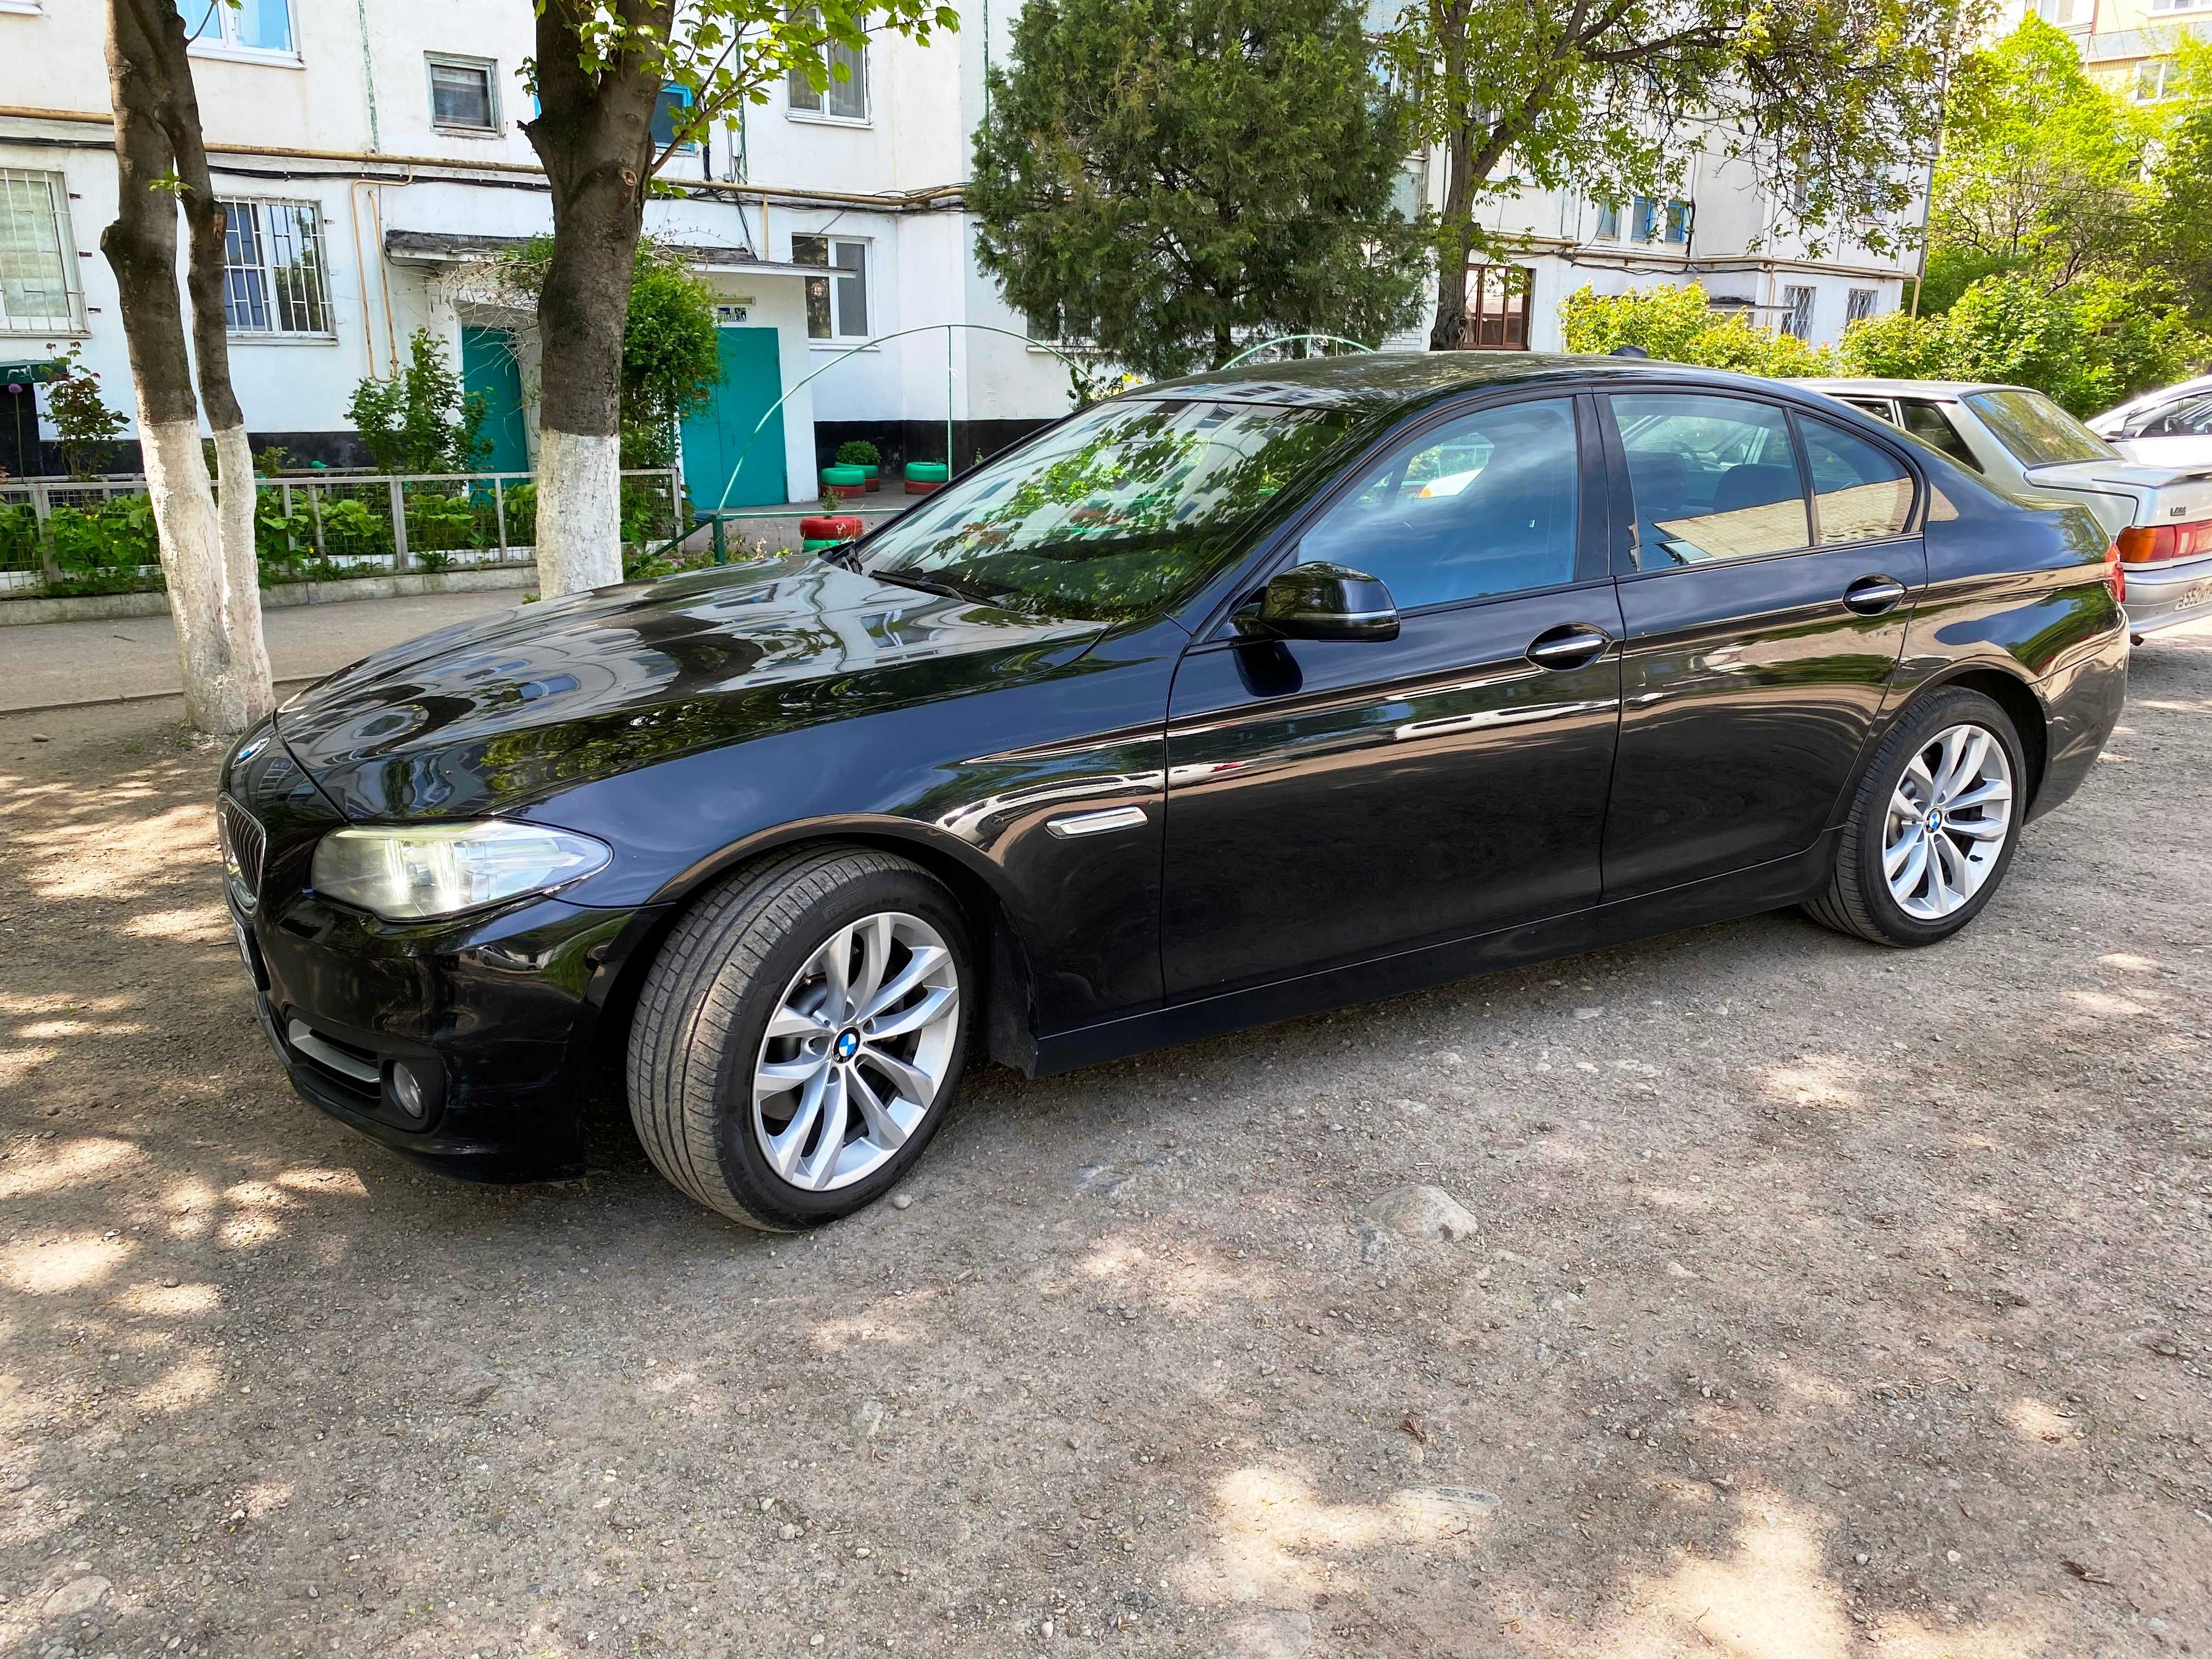 Продается BMW 5 520i 2015 российский учет